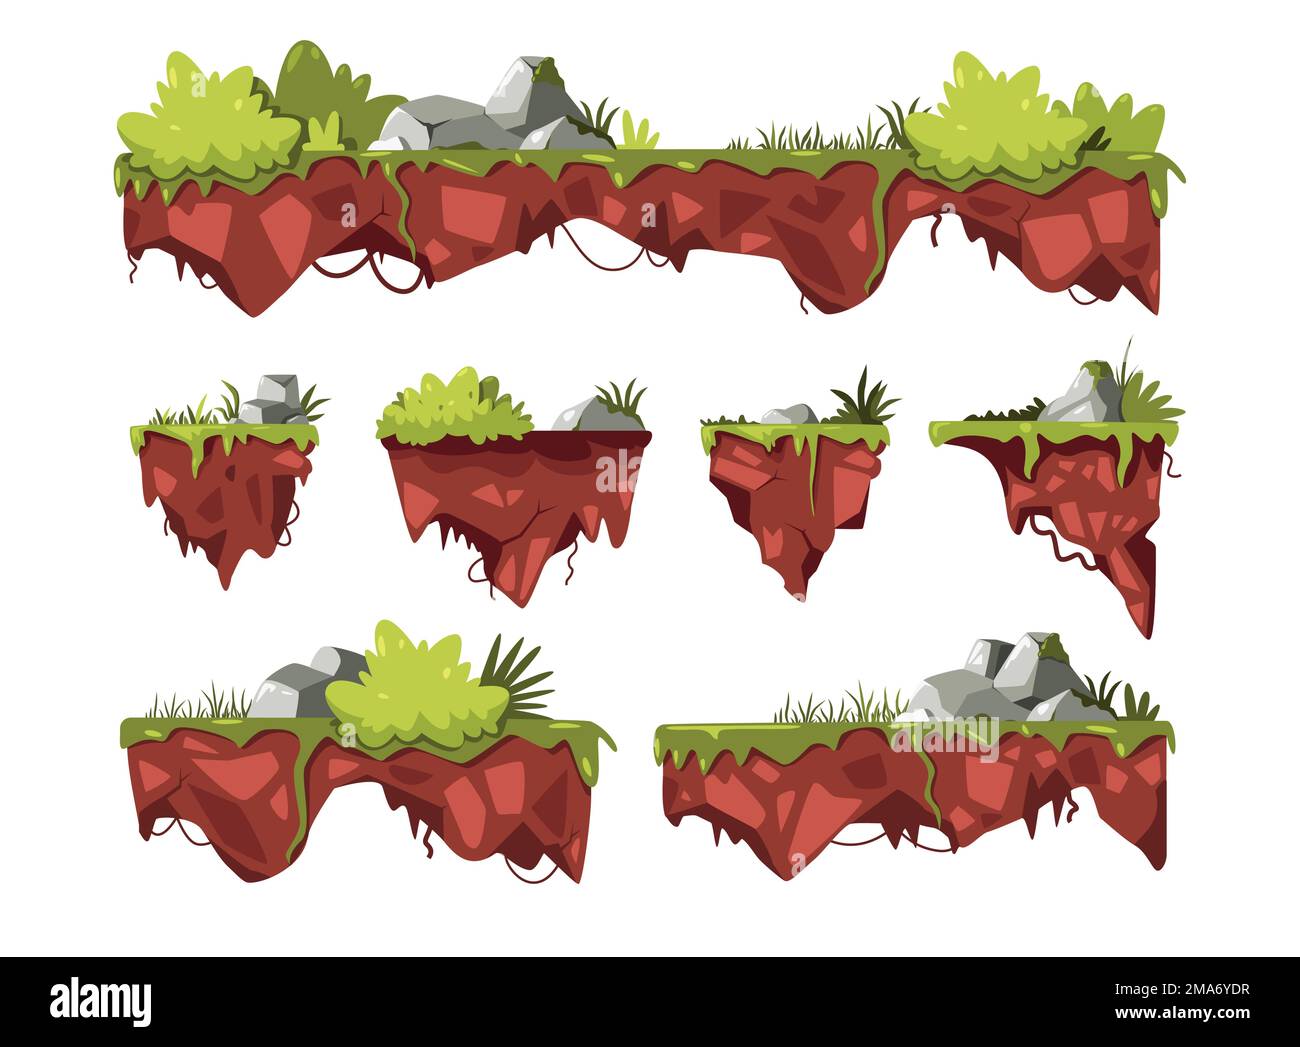 Terrain de jeu. Plates-formes de dessin animé avec buissons d'herbe verte accrochés dans l'air, morceaux flottants de paysage de fantaisie pour le jeu actif. Ensemble de vecteurs Illustration de Vecteur